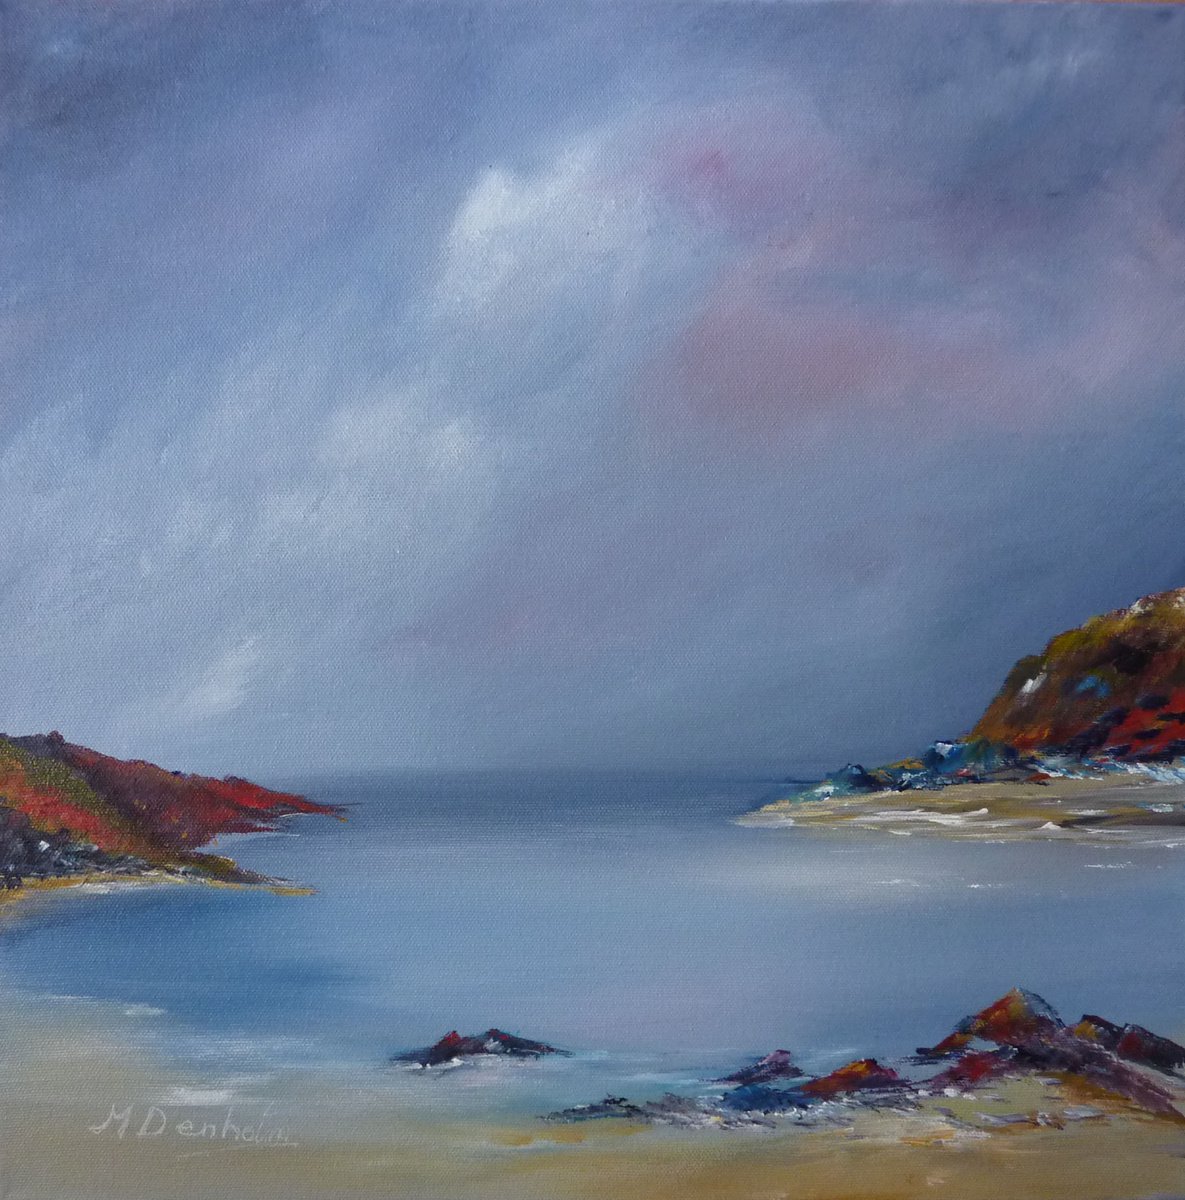 November Light, A Scottish Seascape by Margaret Denholm